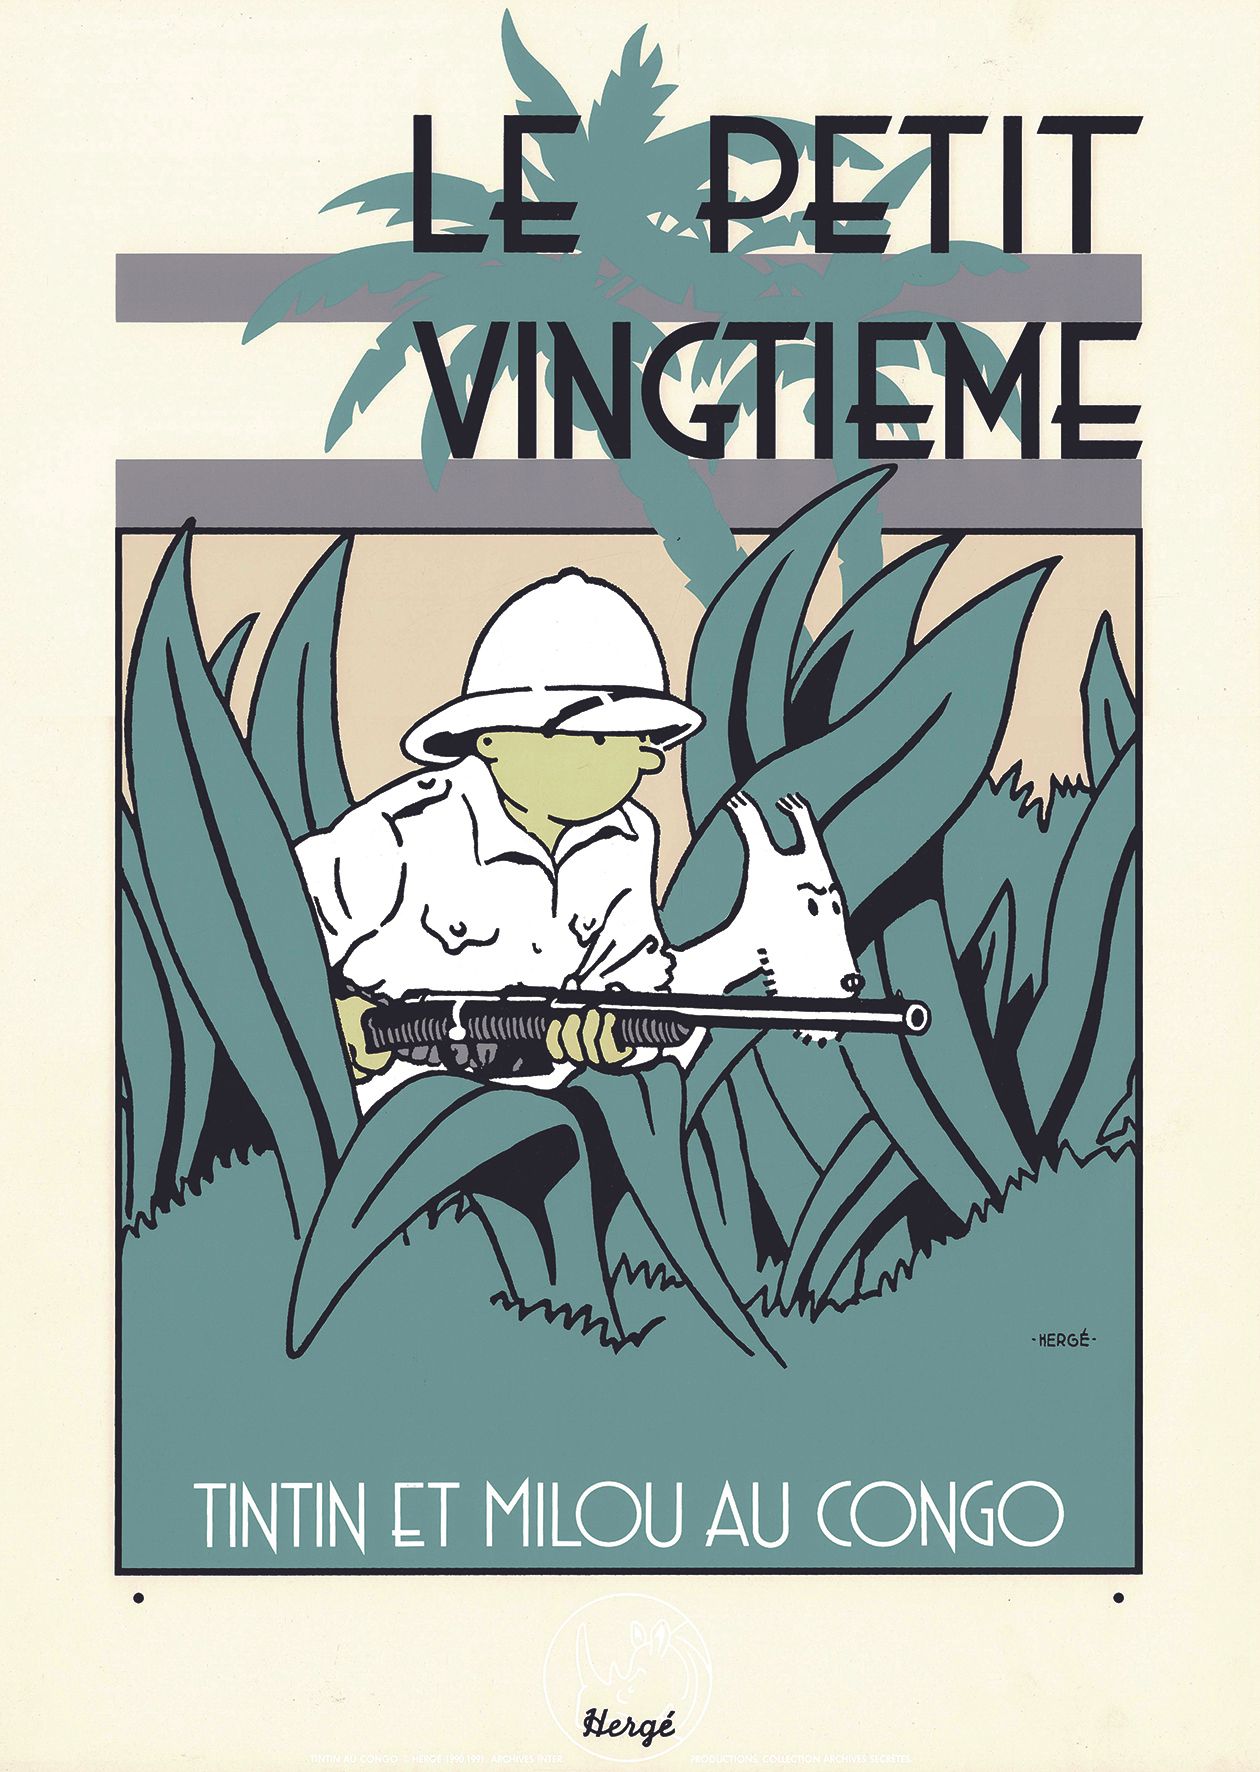 HERGÉ 
Tintin, "Le Petit Vingtième", serigrafia dell'episodio "Tintin in Congo",&hellip;